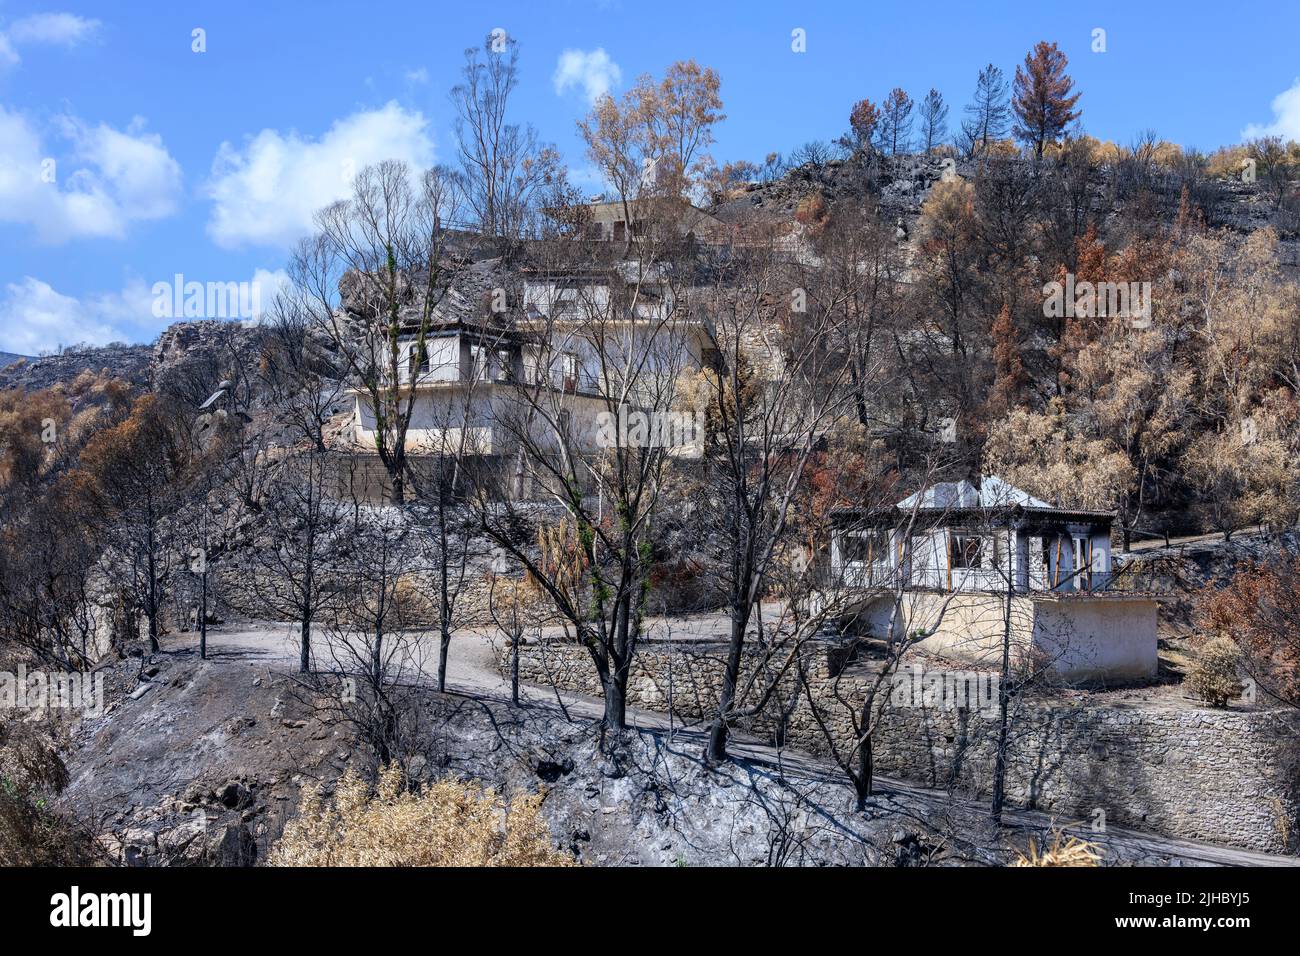 Feuer beschädigte Häuser, verursacht durch einen wilden Brand auf einem Hügel in Koroni, Messinia, an der Südspitze des Peloponnes, Griechenland. Stockfoto